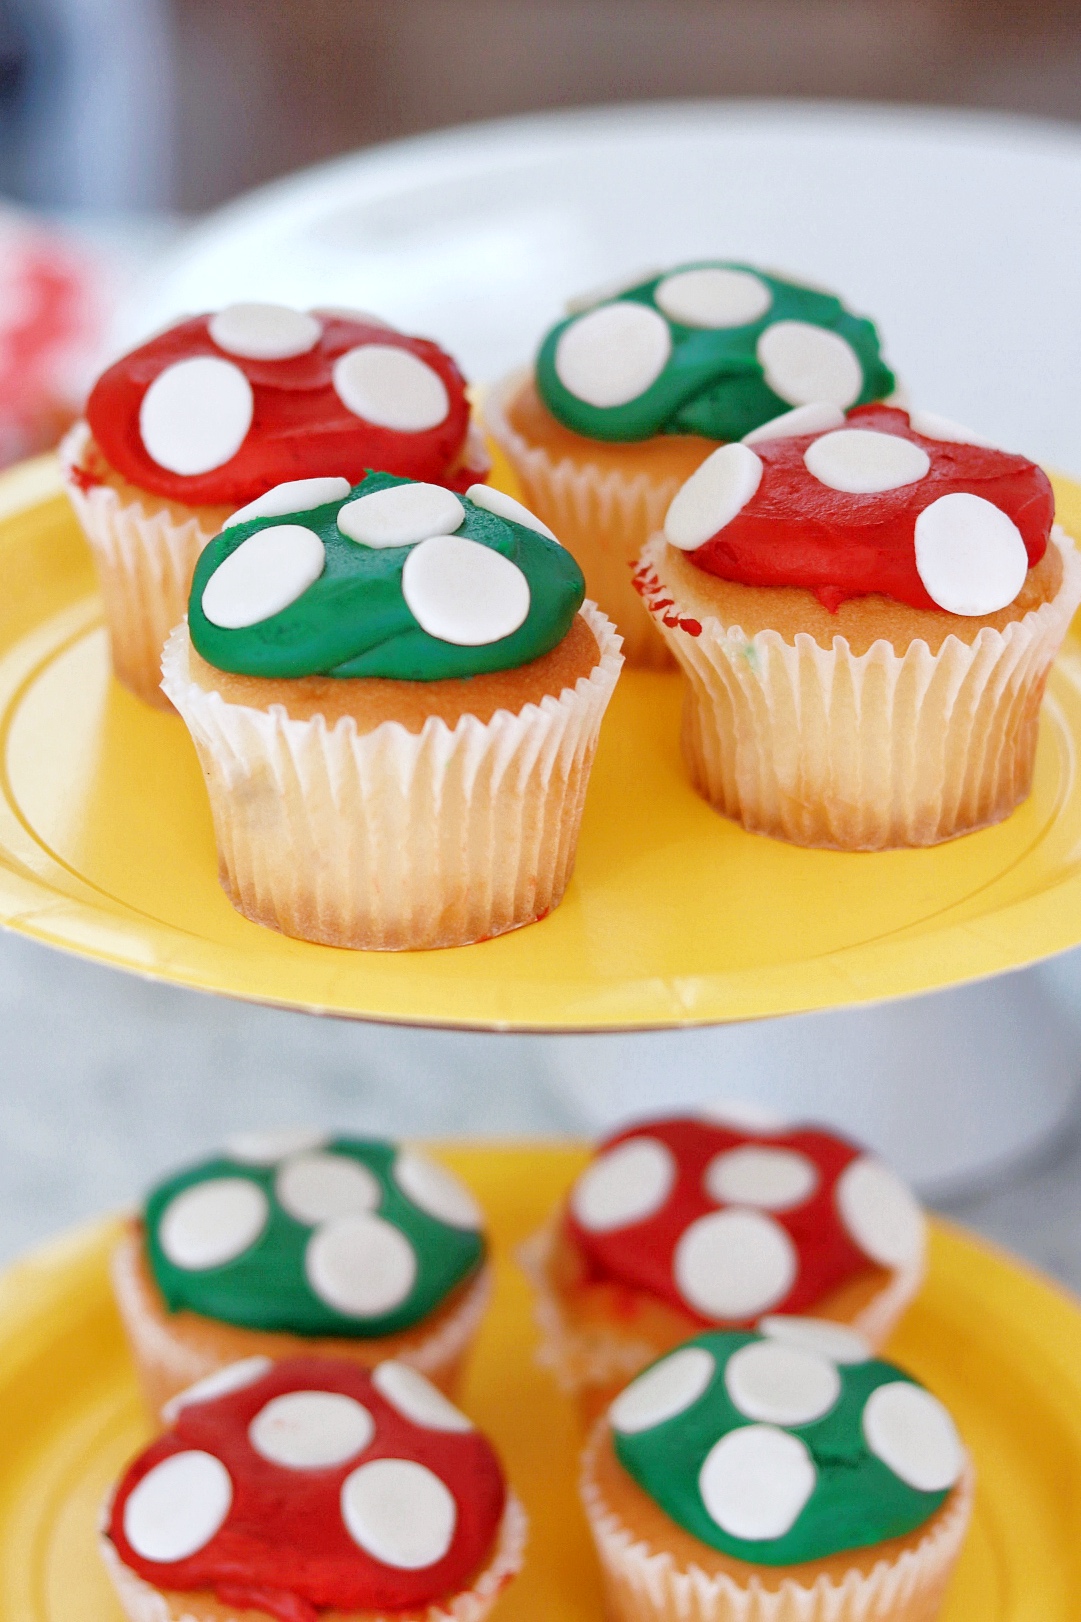 Nintendo birthday party food ideas: mushroom cupcakes